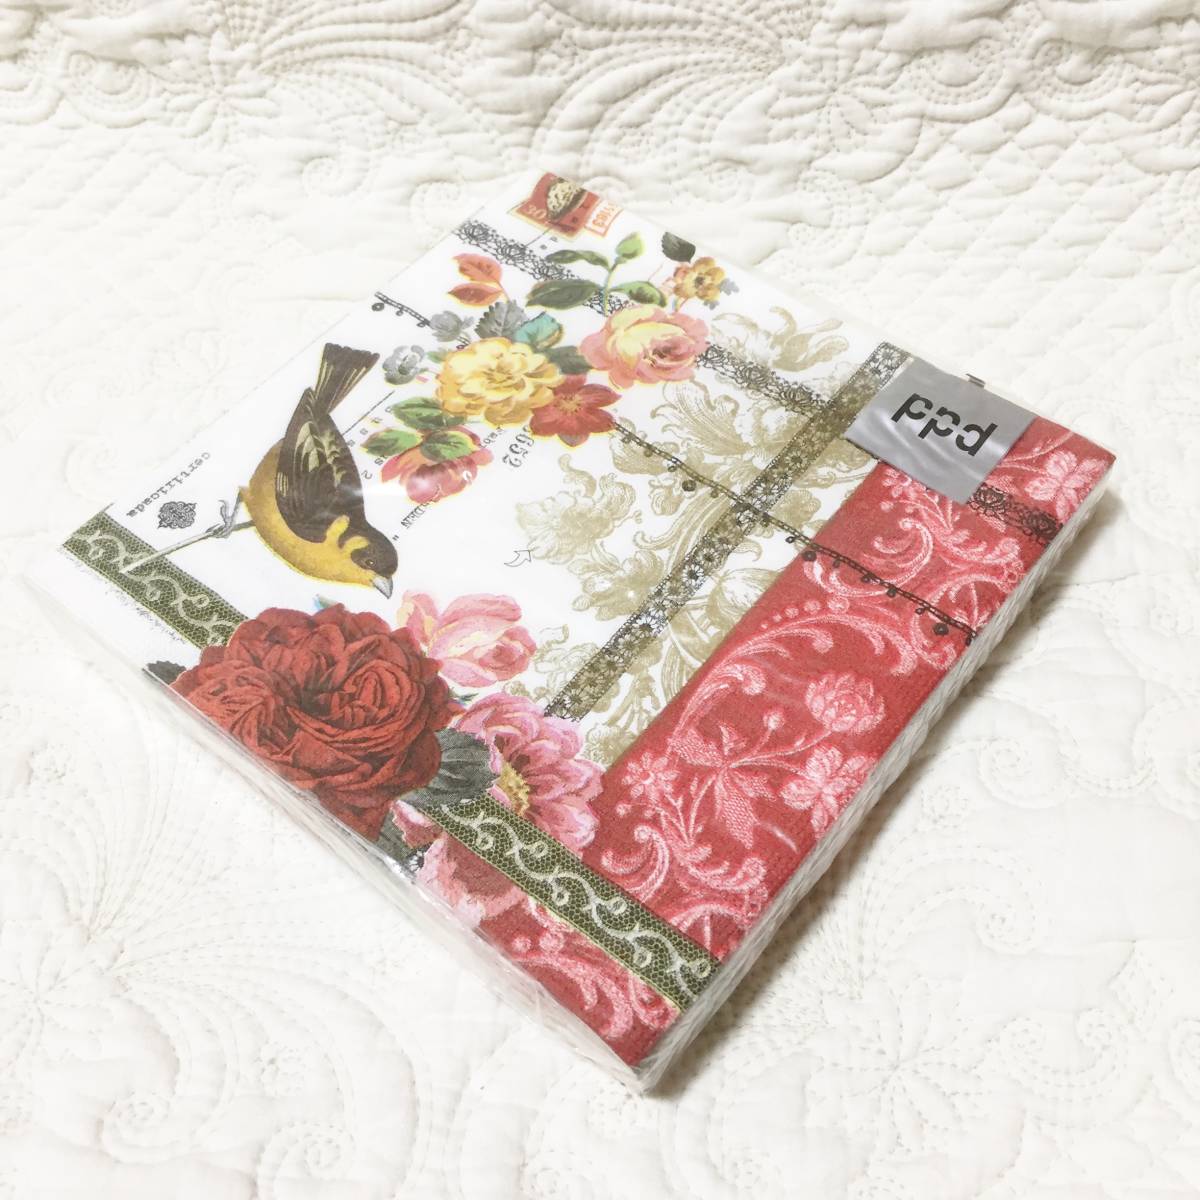  новый товар ppd бумага салфетка птица × цветочный принт 